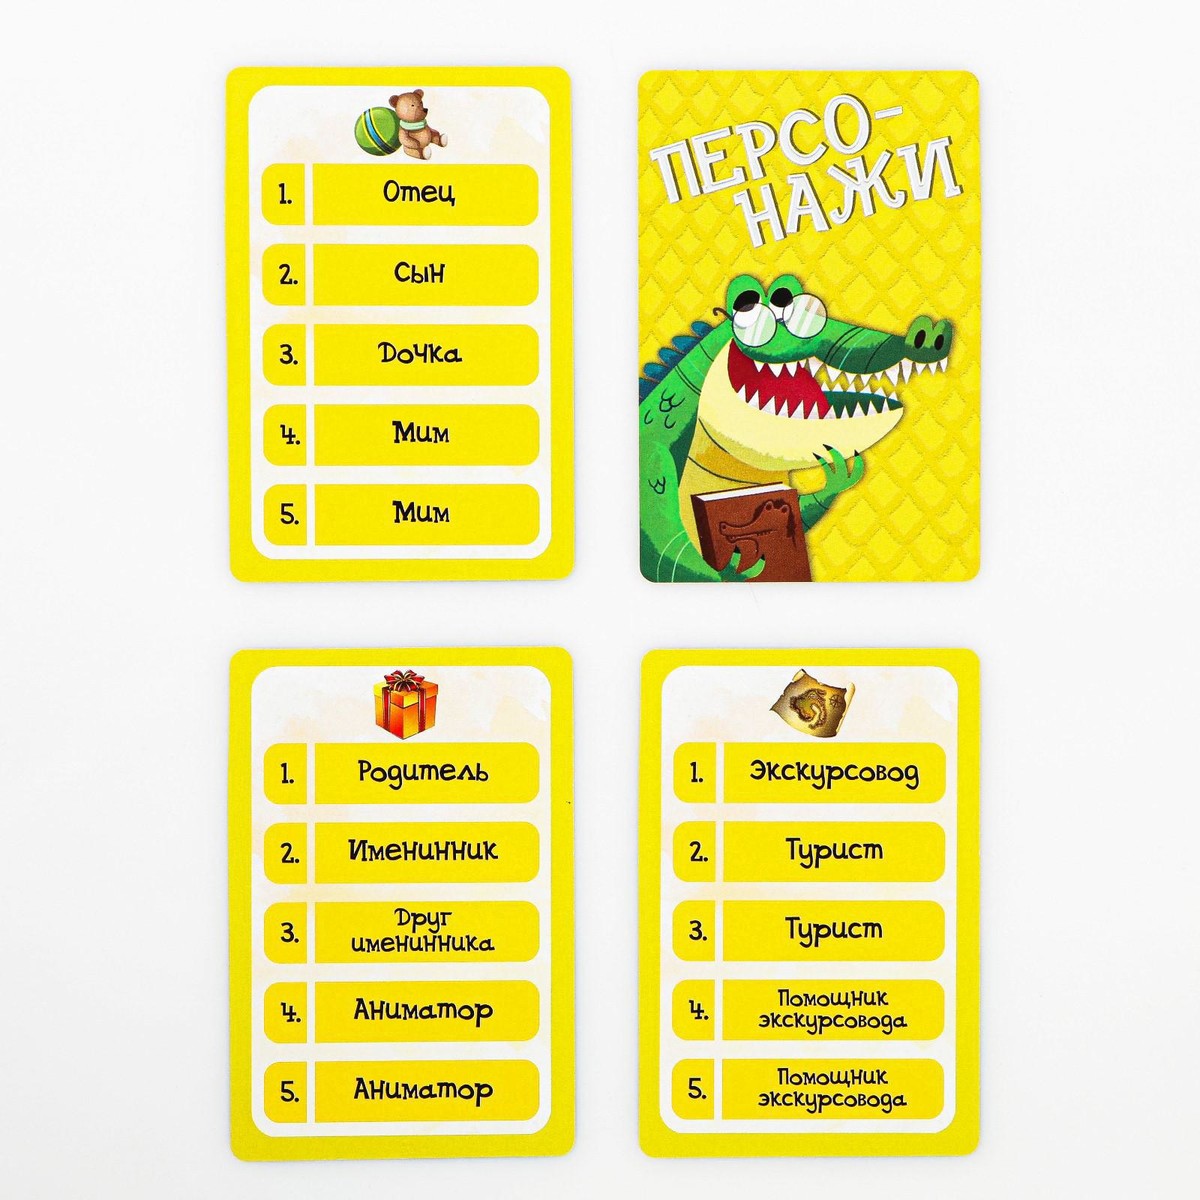 Смешные слова для игры в крокодил. Карточки для крокодила. Игра крокодил. Игра крокодил для детей. Слова для крокодила.